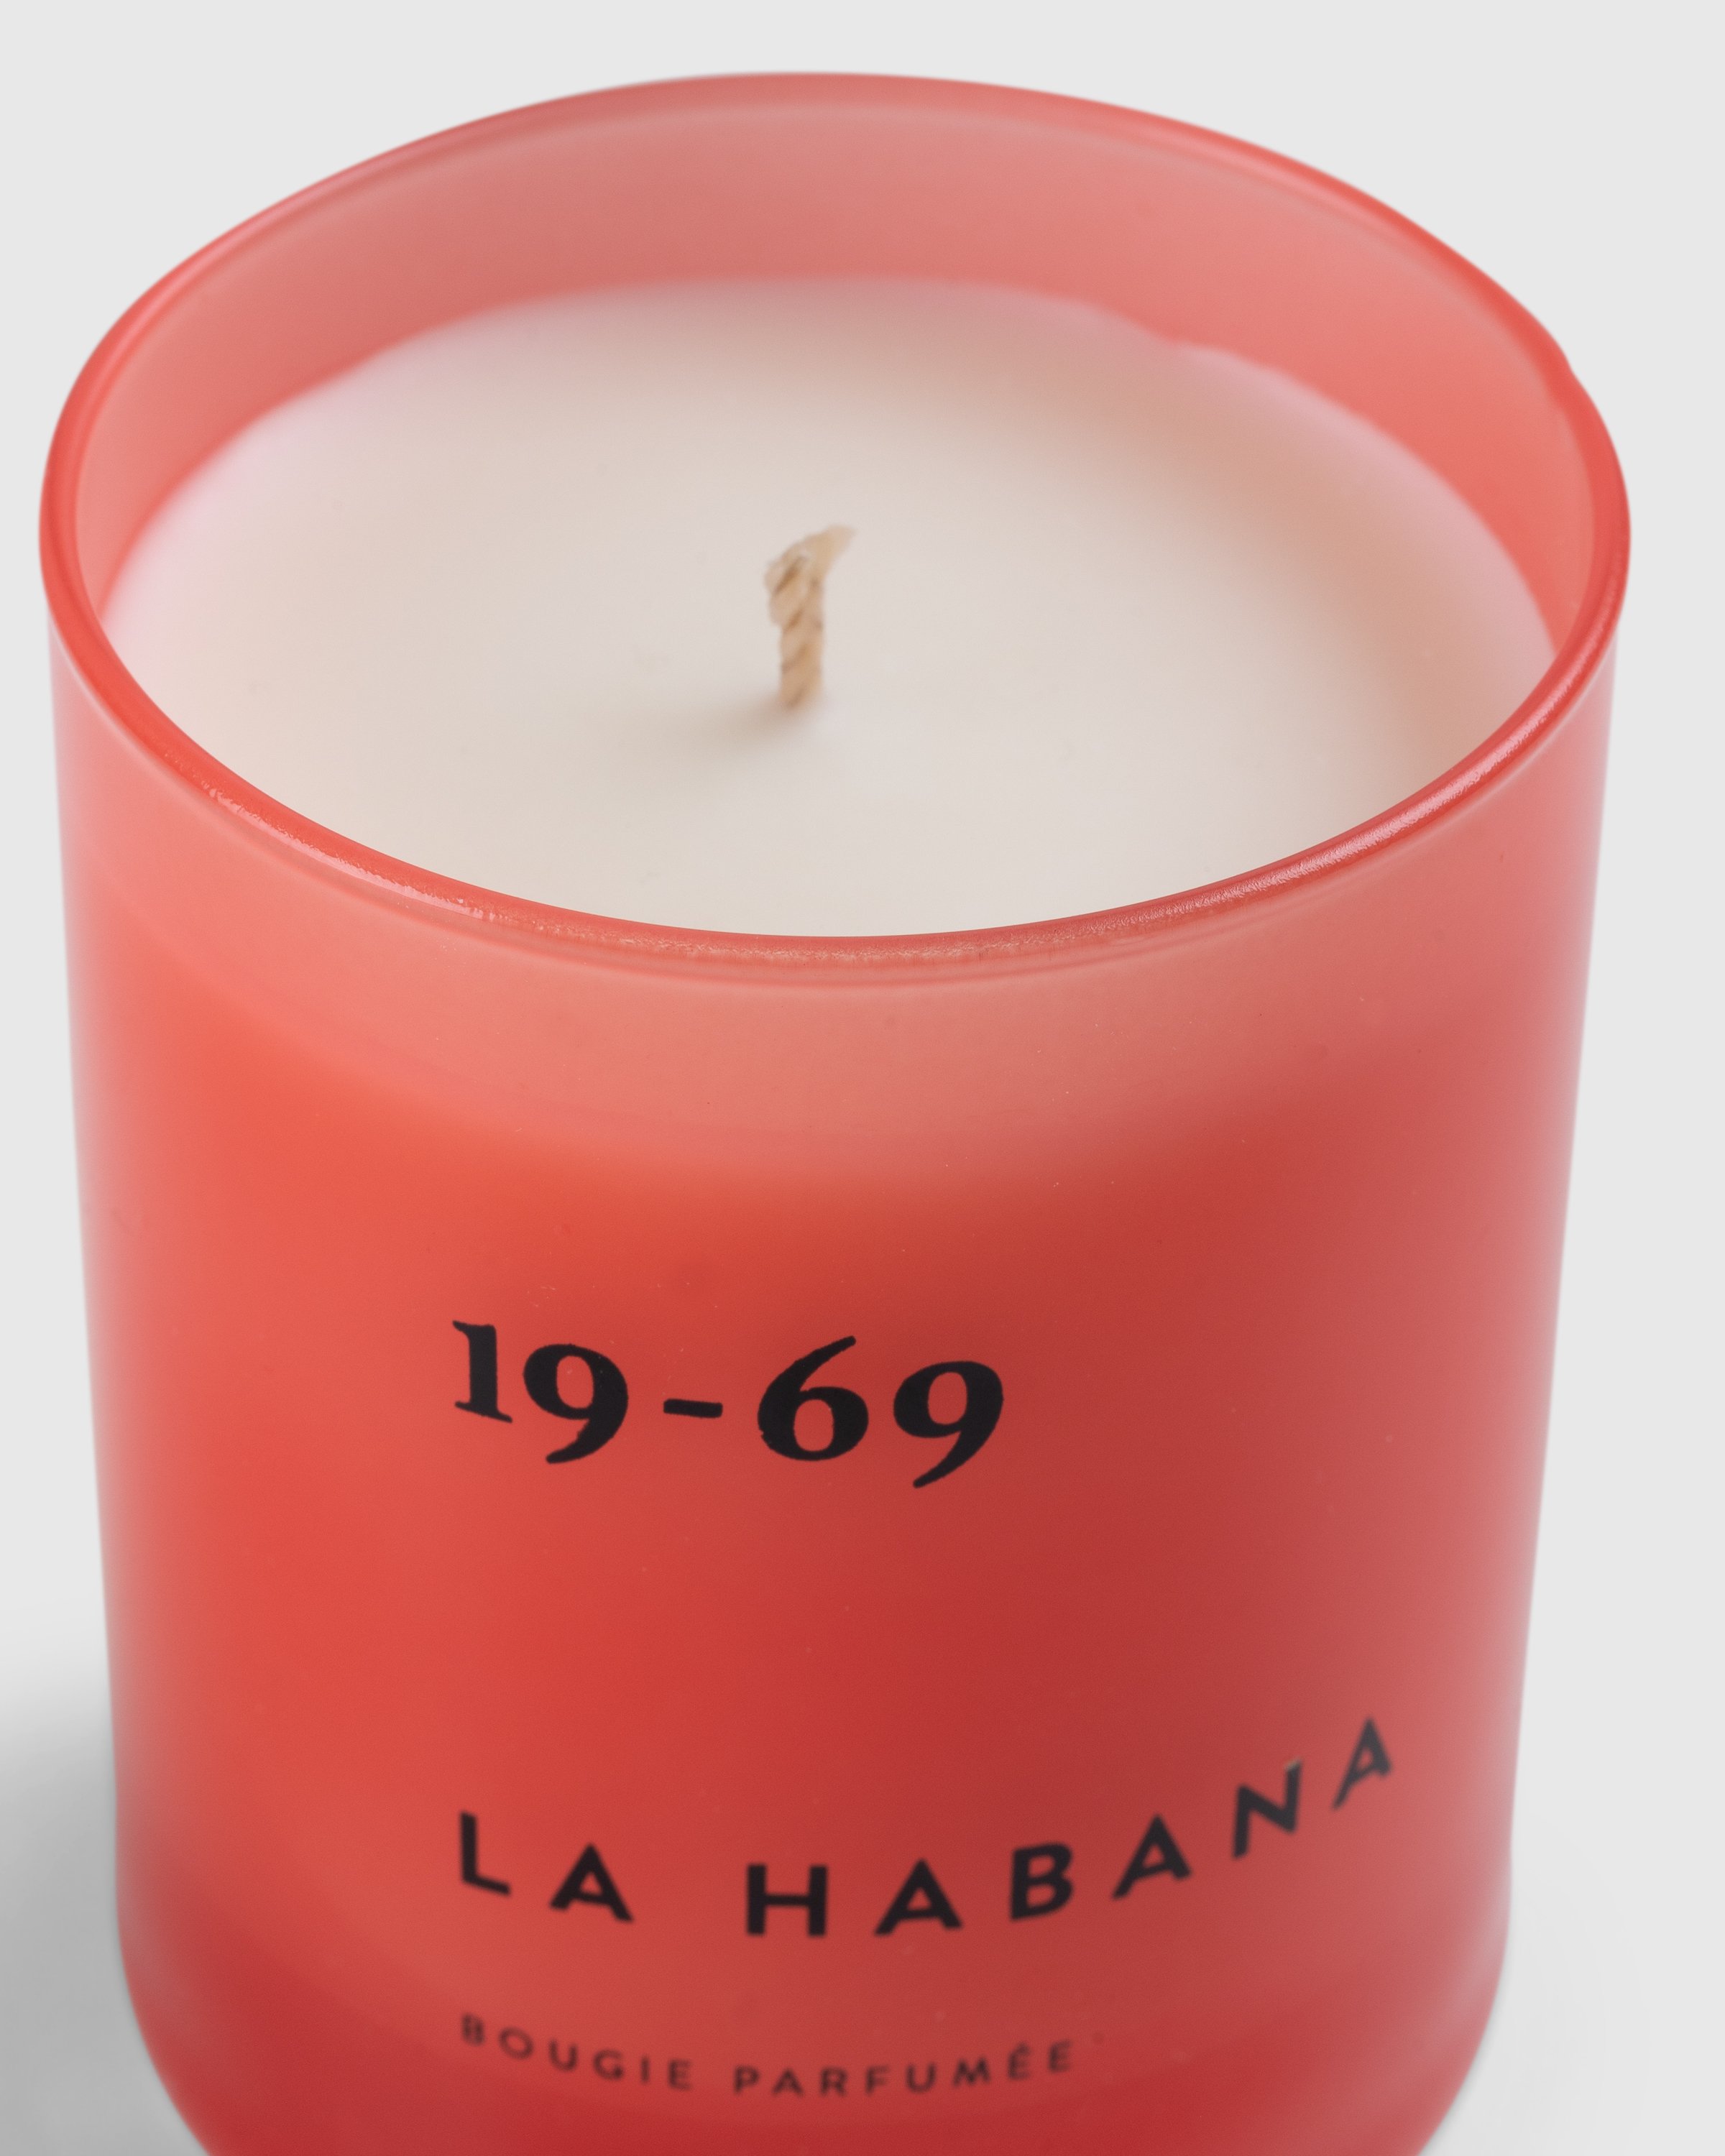 19-69 - La Habana BP Candle - Lifestyle - Red - Image 3